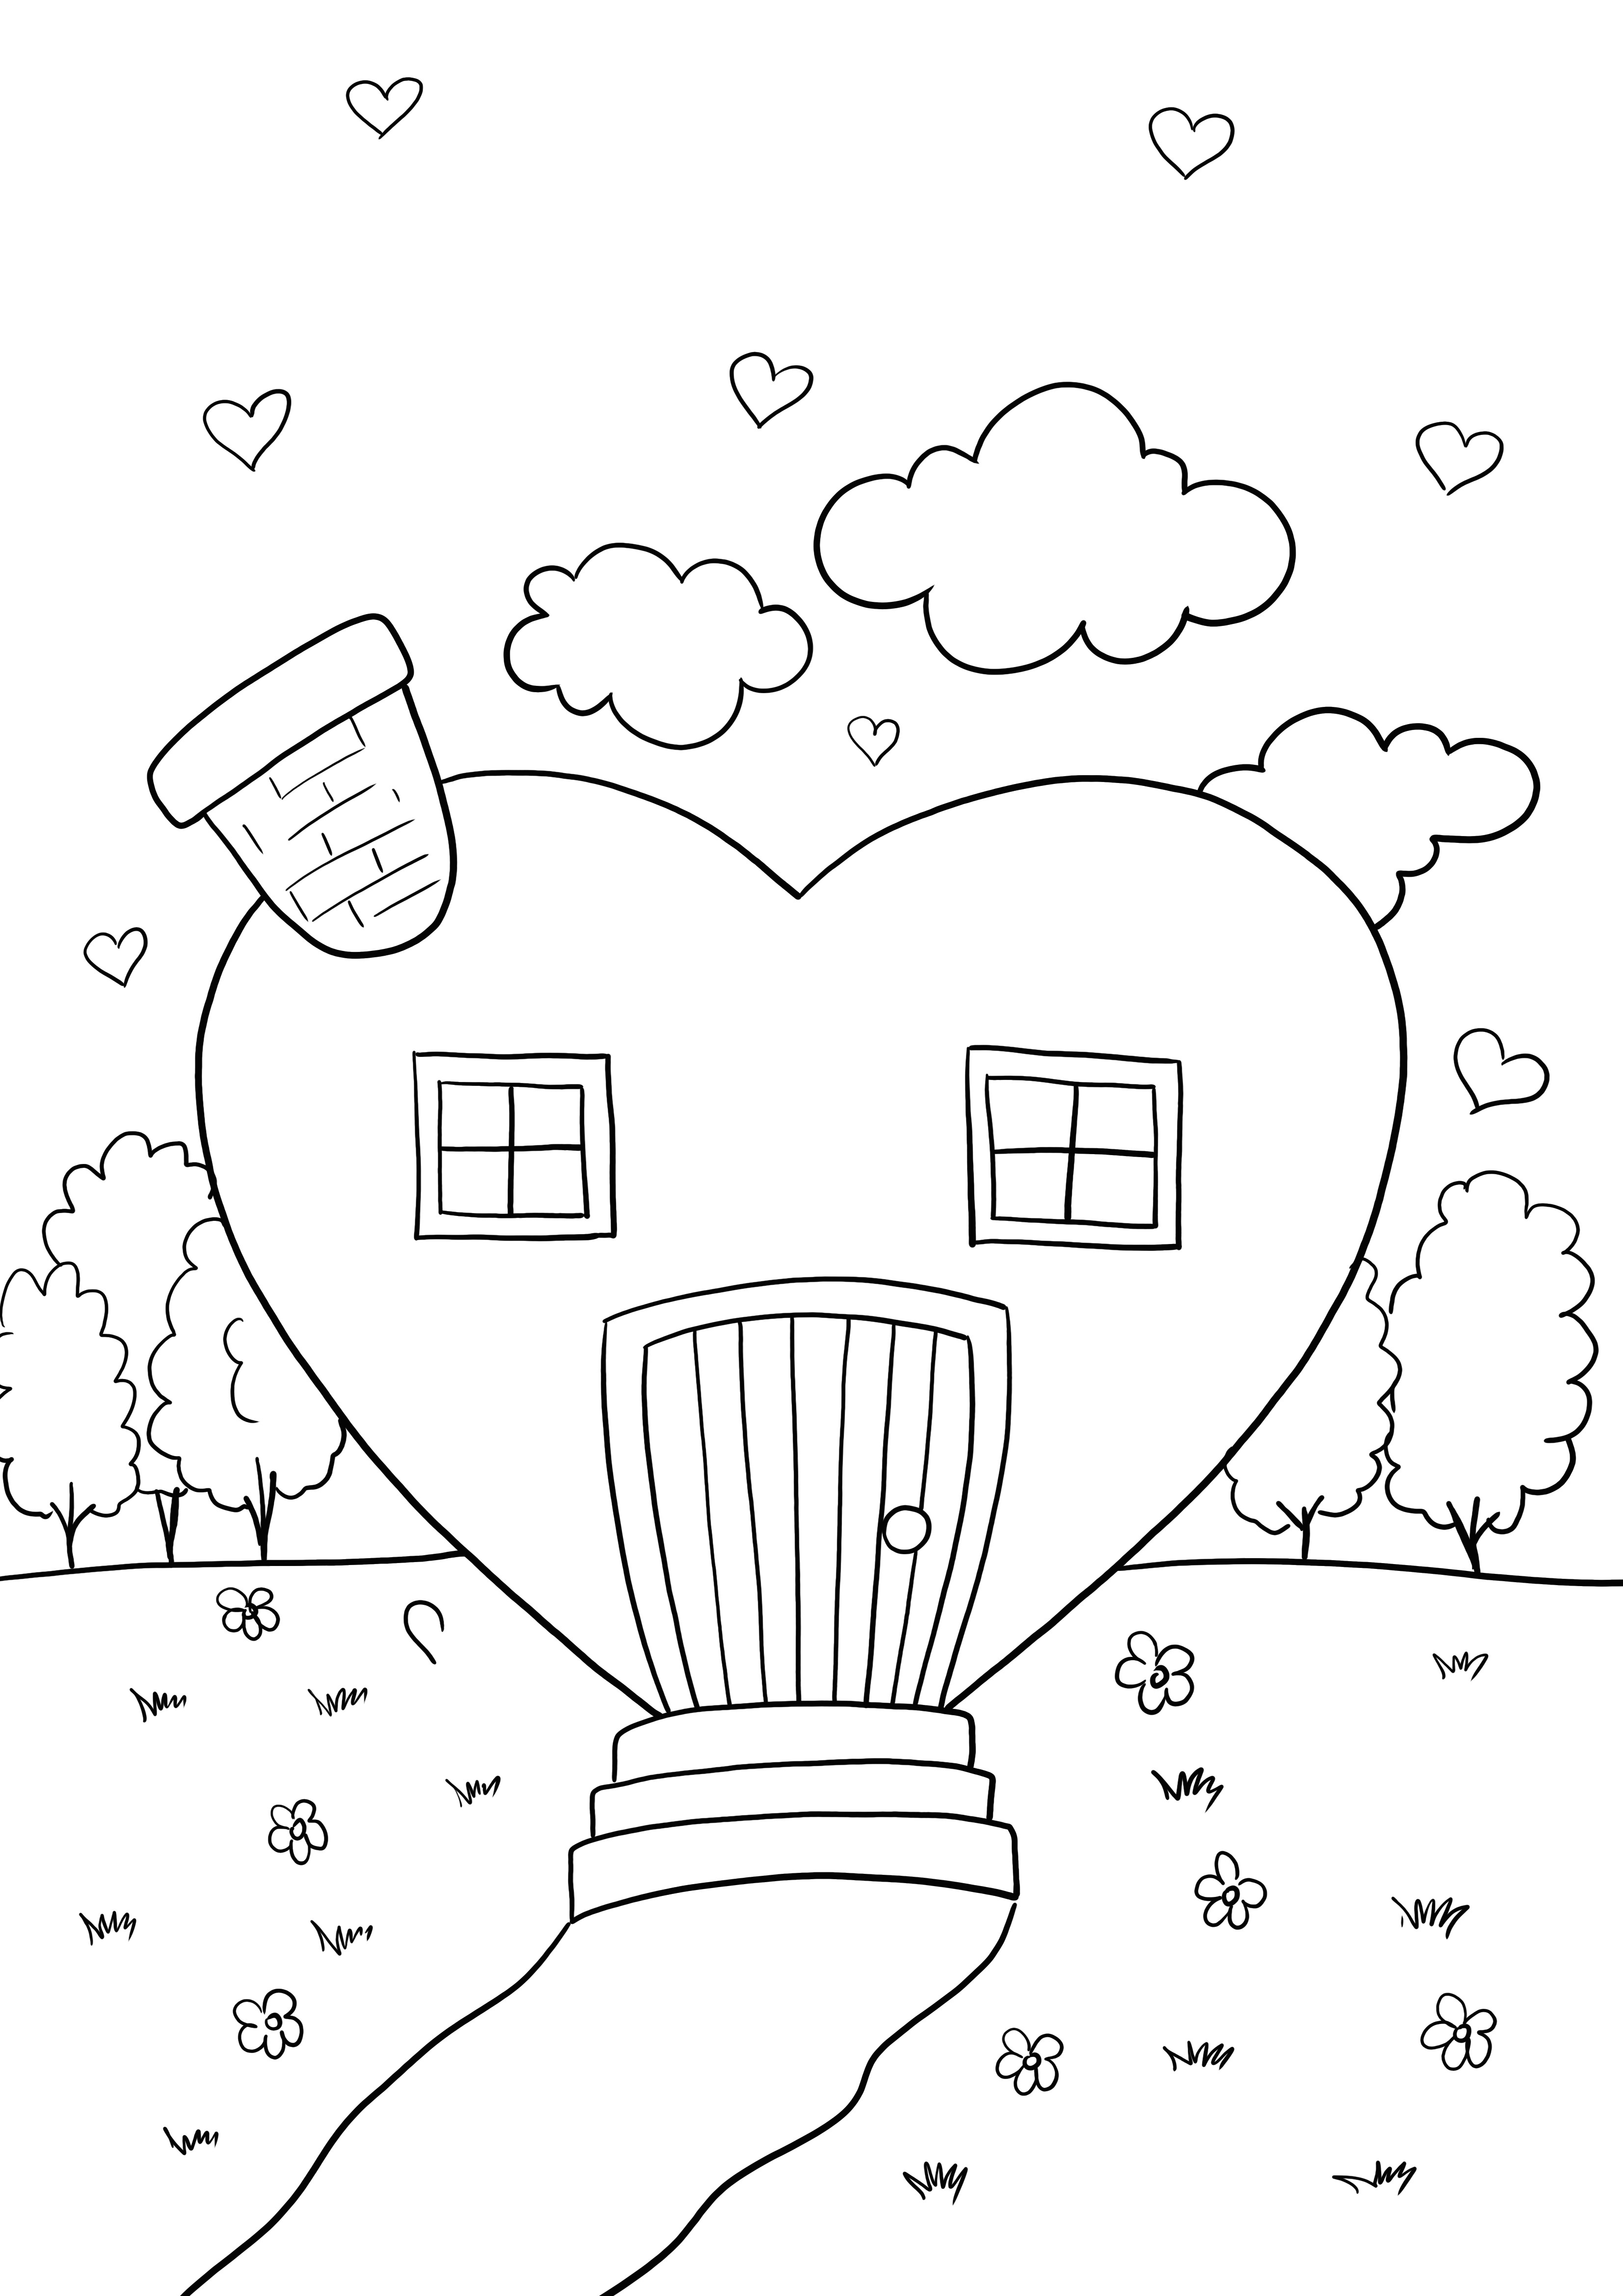 ücretsiz baskı için kalp şeklinde ev boyama sayfası